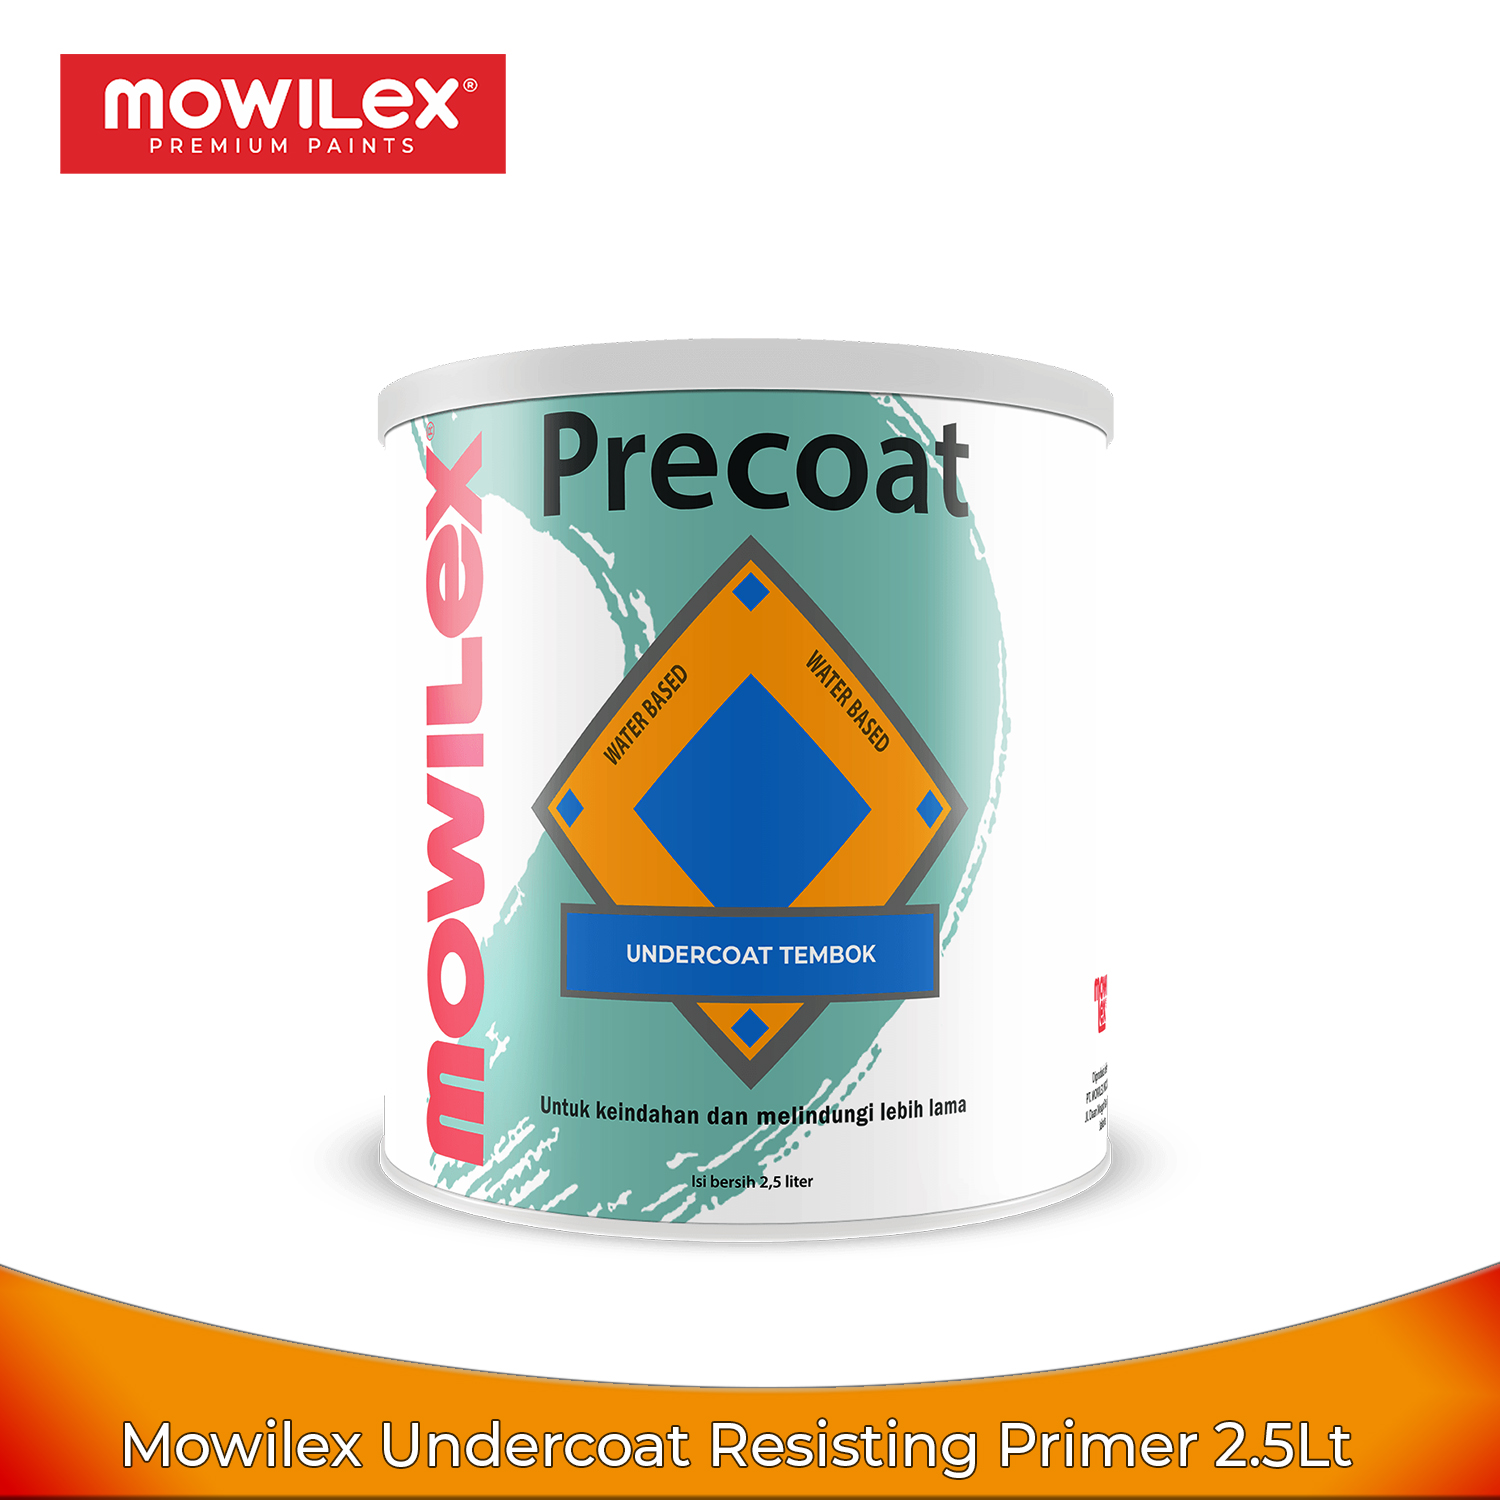 Mowilex Undercoat Resisting Primer 2.5Lt - Cat Dasar Tembok